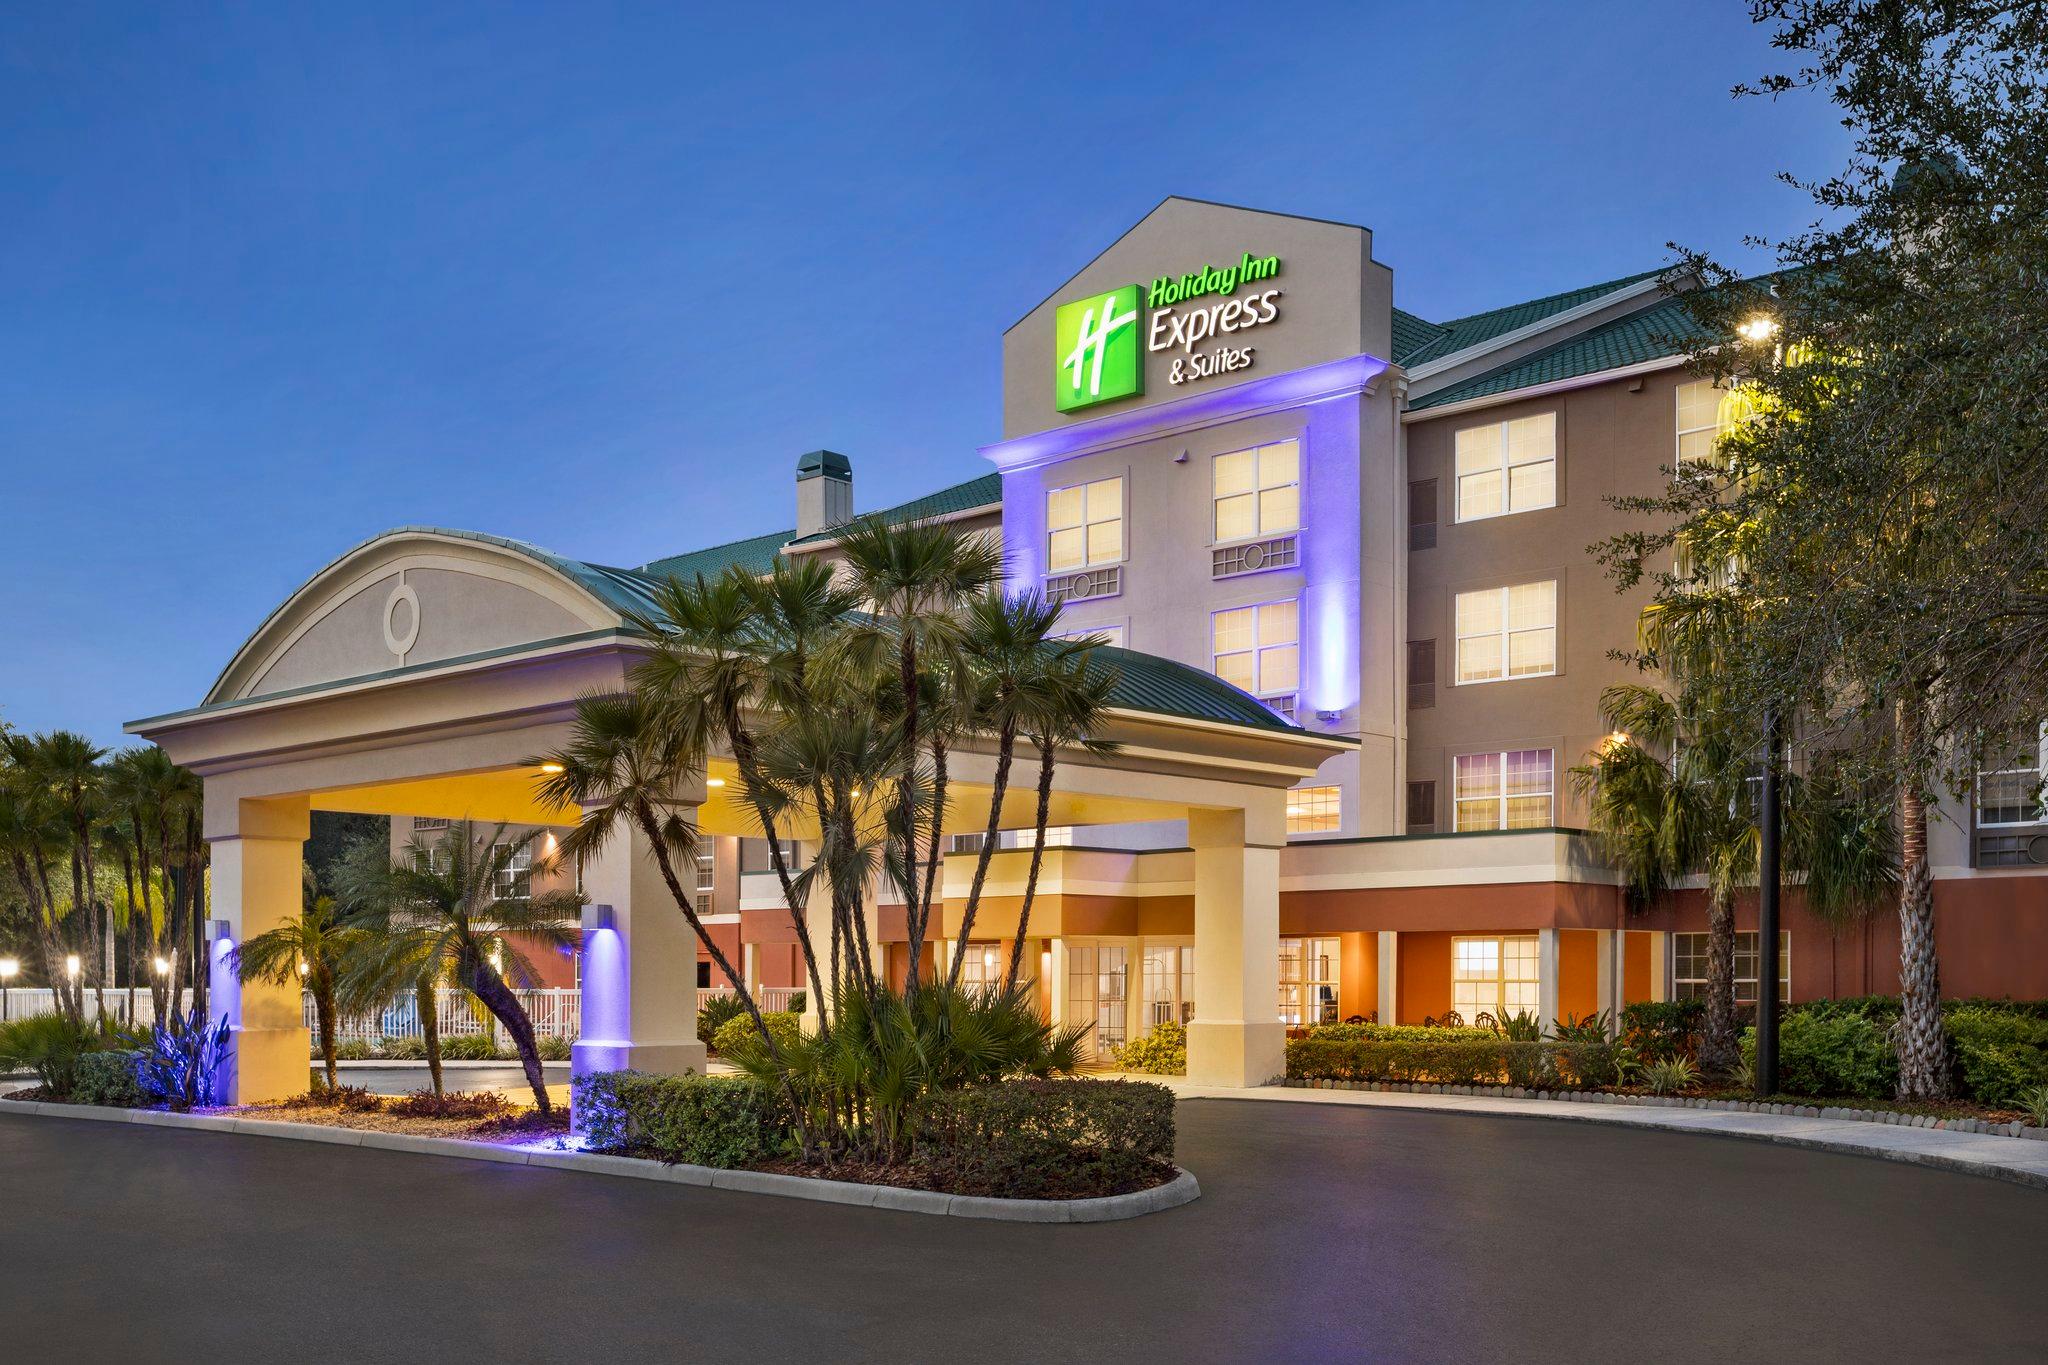 Holiday Inn Express & Suites Sarasota East - I-75 in Sarasota, FL